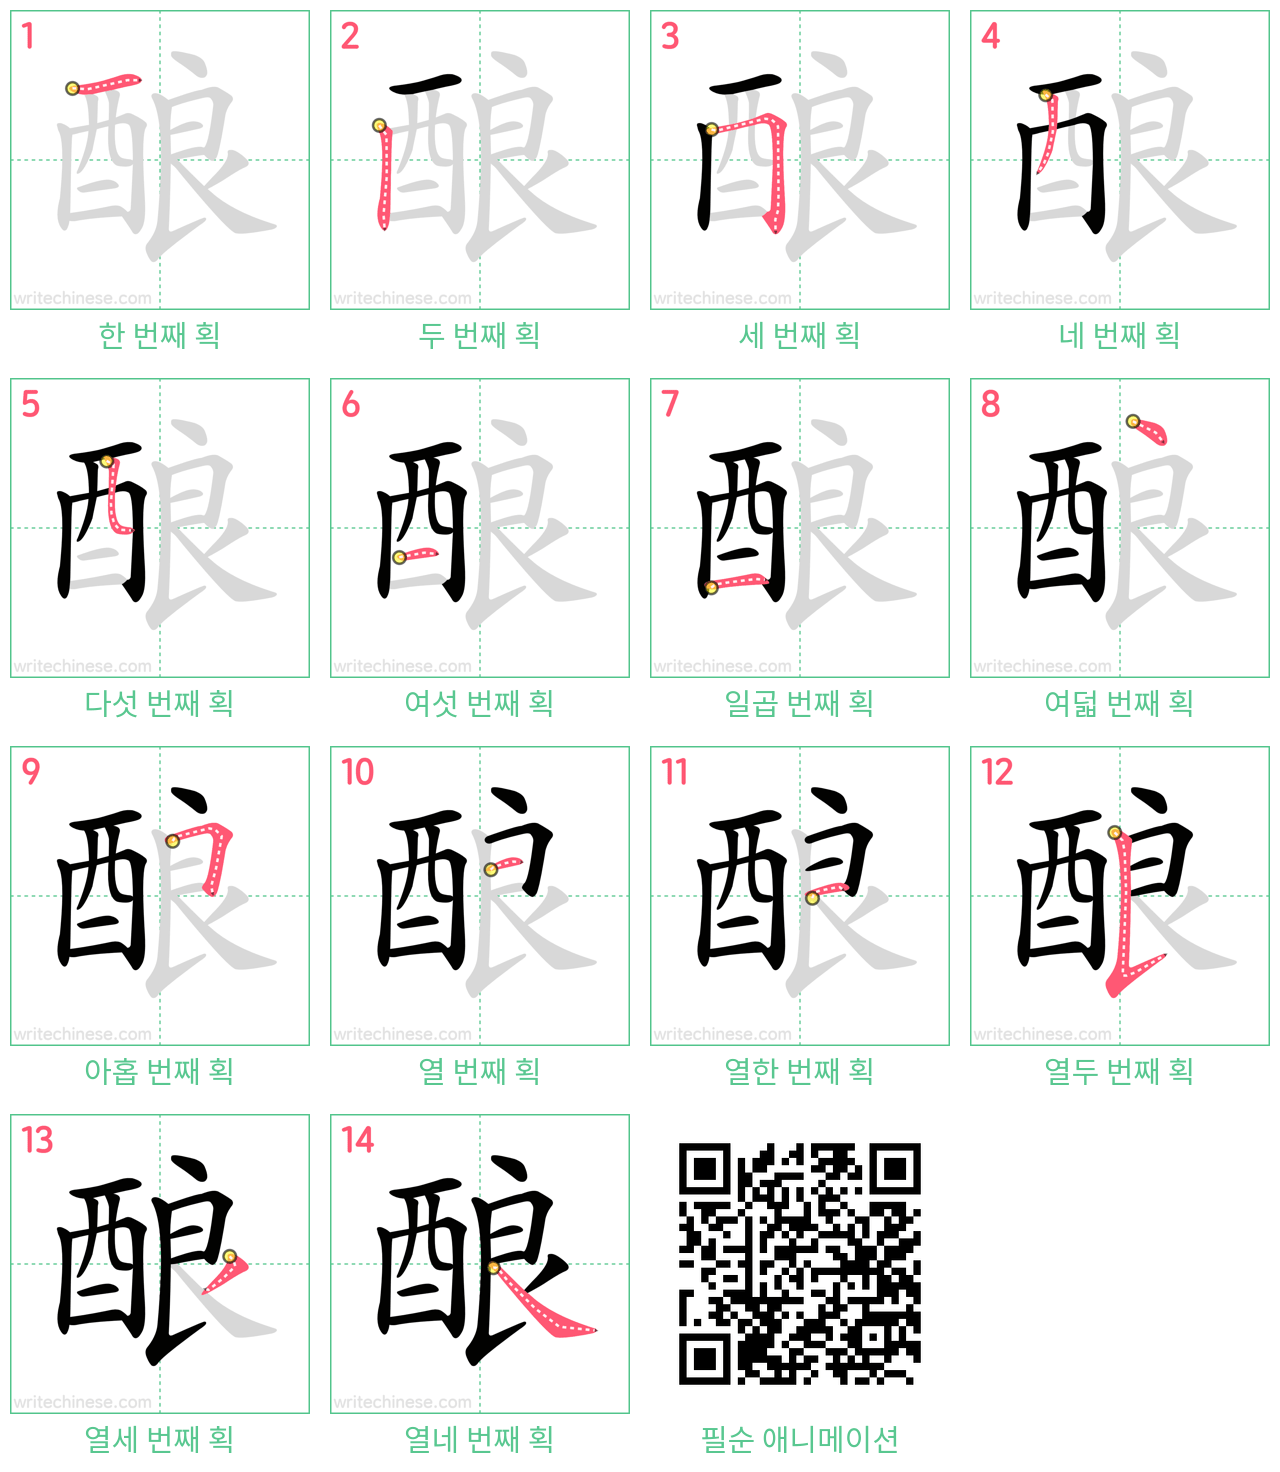 酿 step-by-step stroke order diagrams